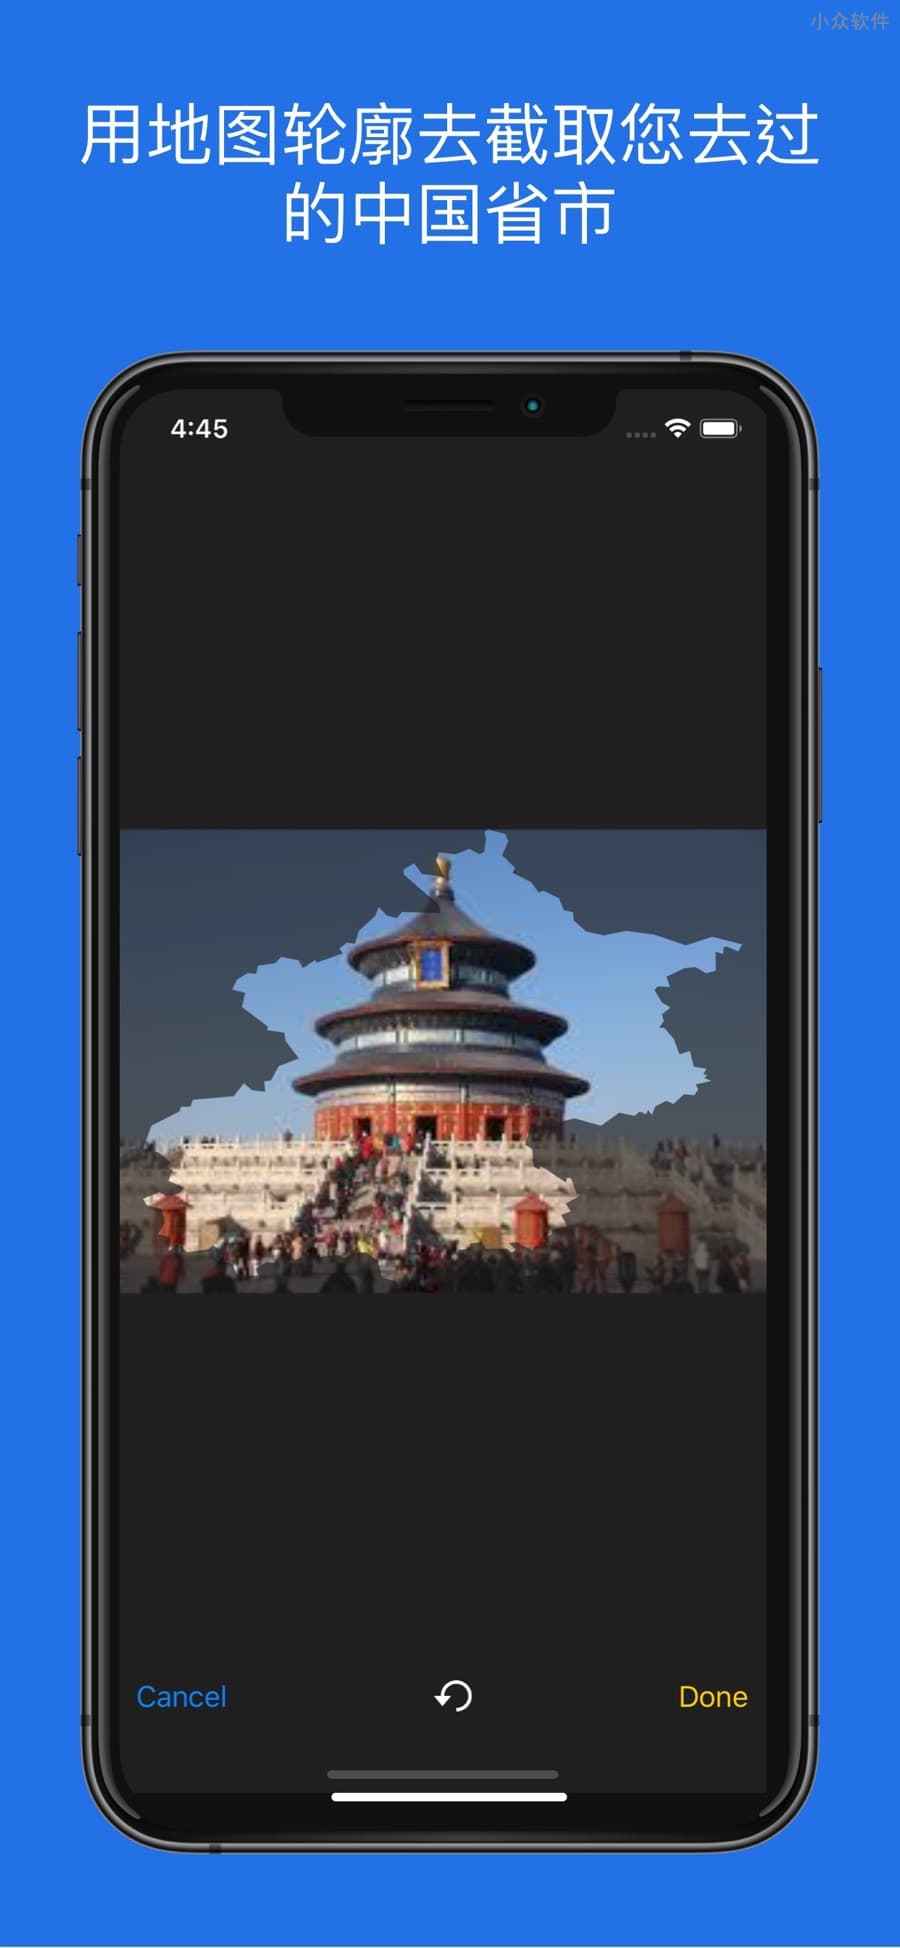 足迹中国 - 用照片填充中国地图轮廓，生成旅行地图[iPhone] 3